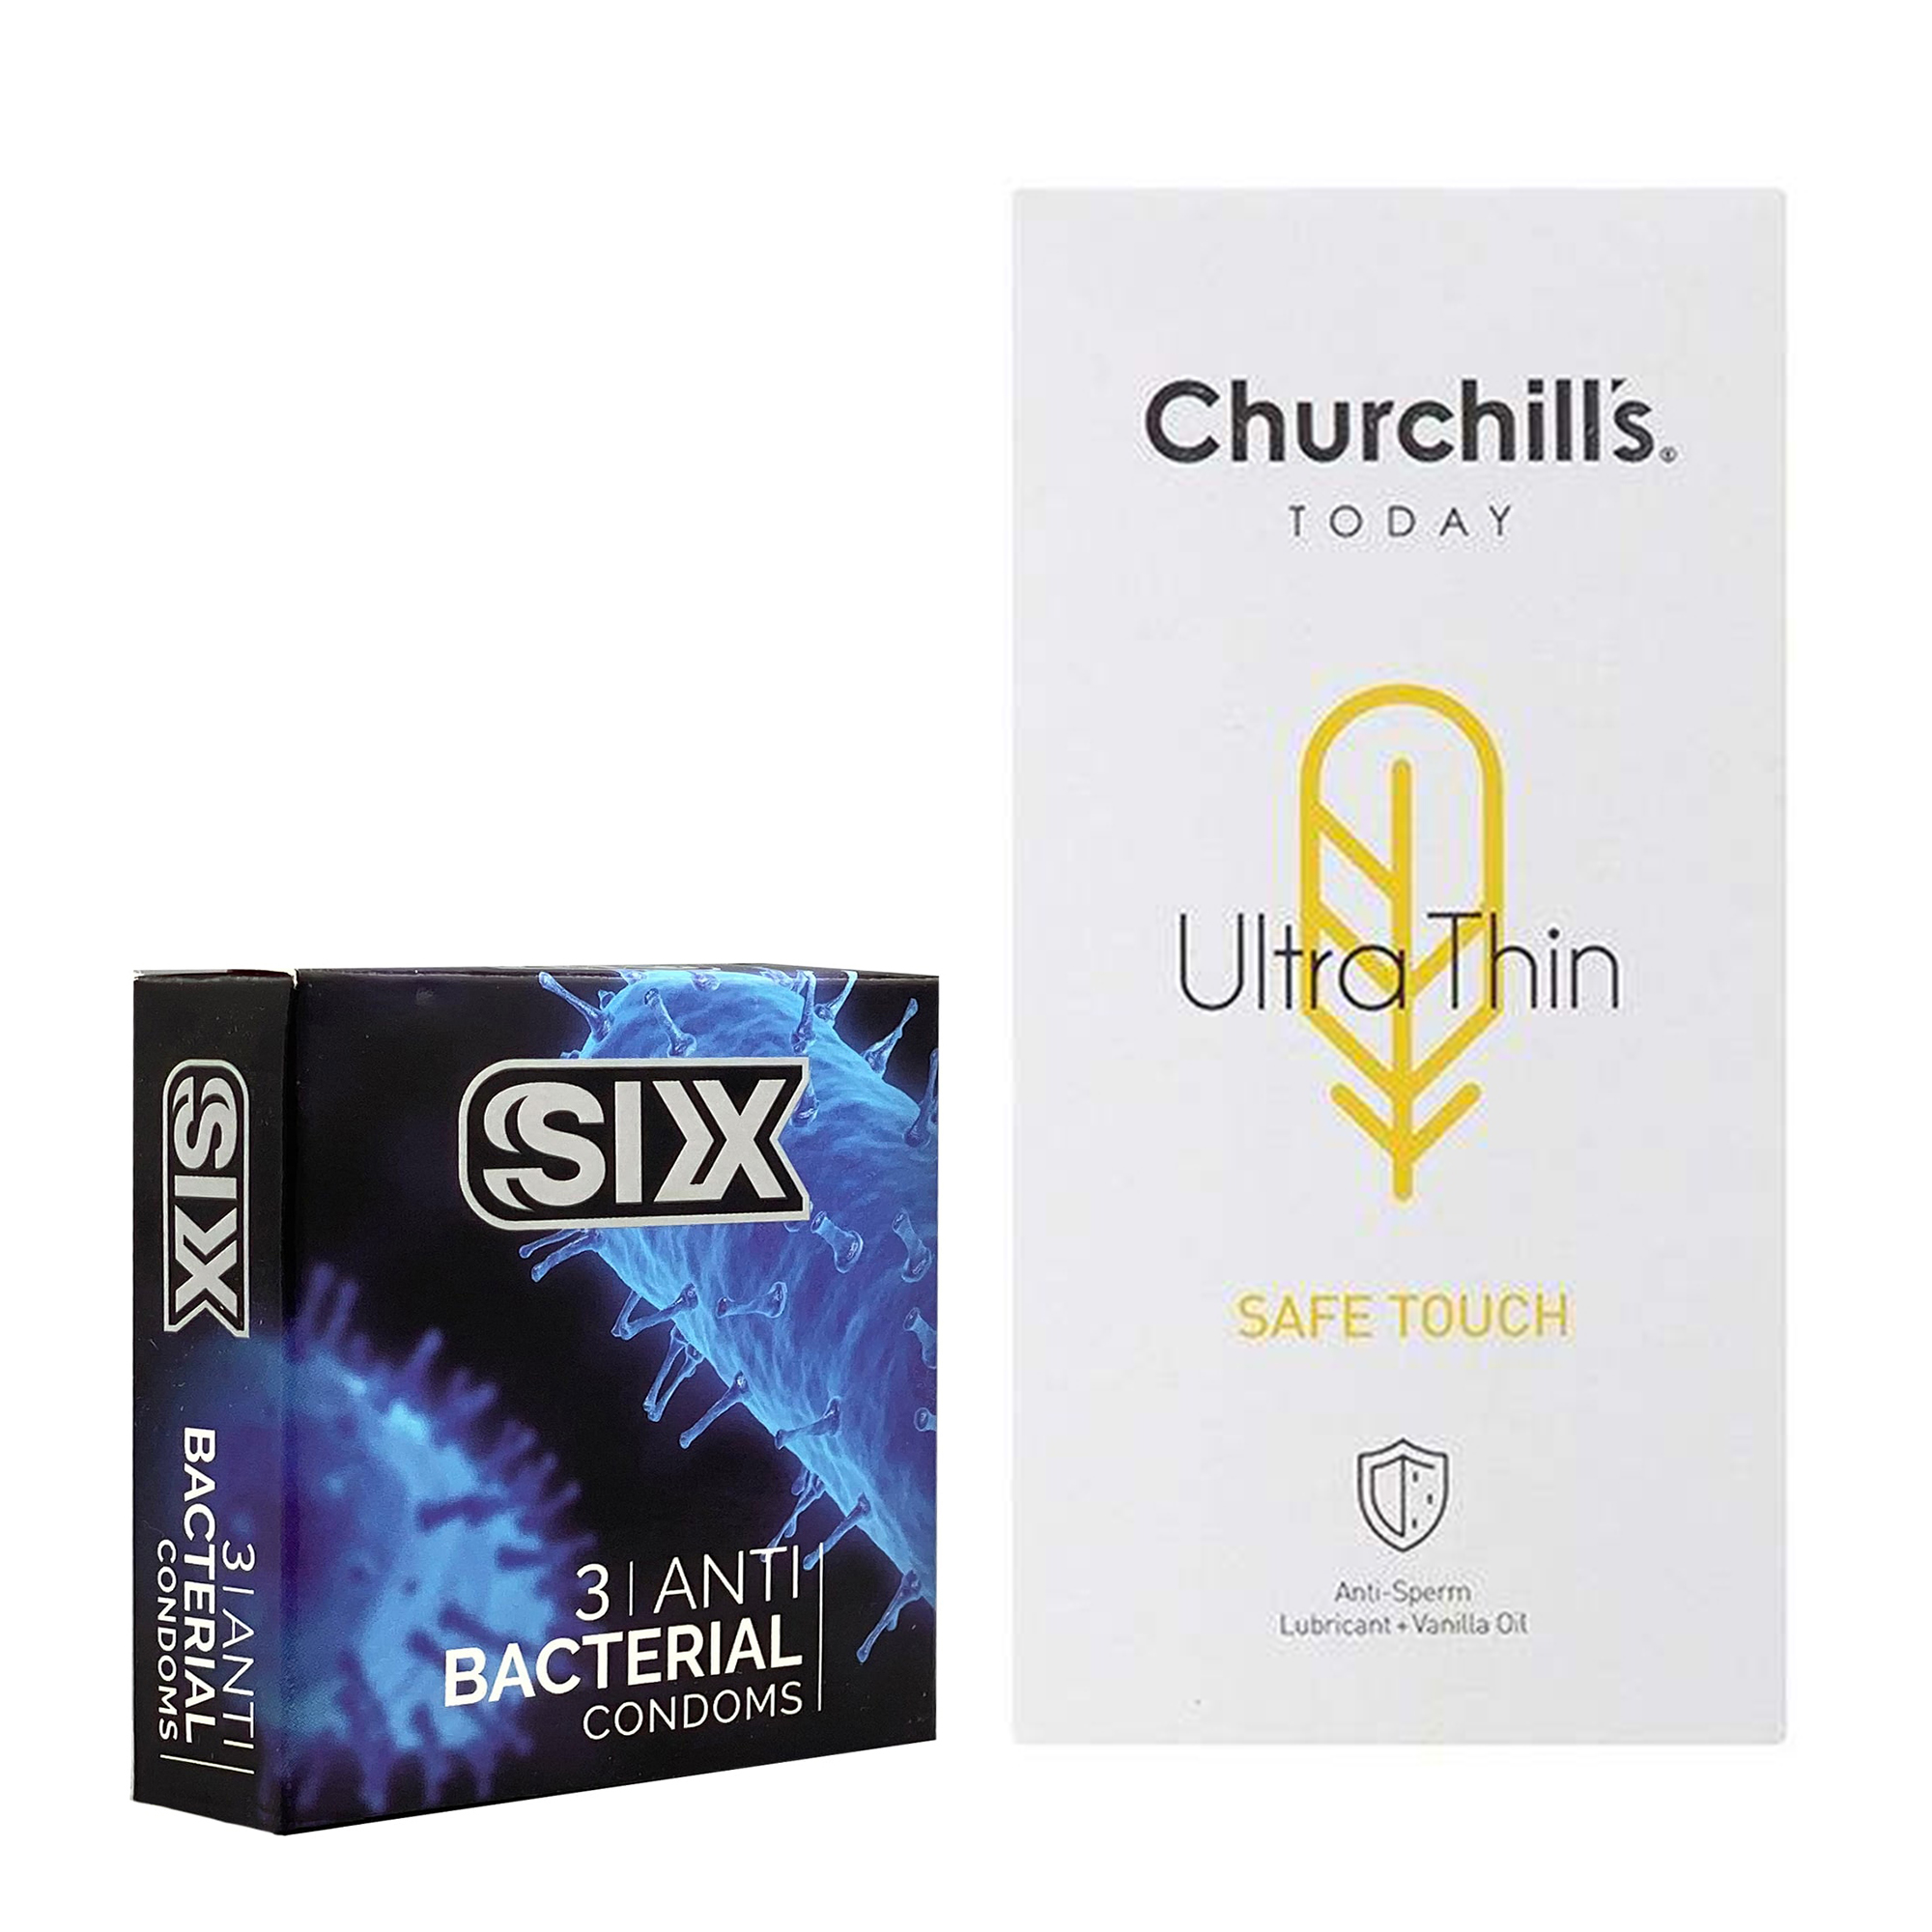 کاندوم چرچیلز مدل Safe Touch بسته 12 عددی به همراه کاندوم سیکس مدل آنتی باکتریال بسته 3 عددی 